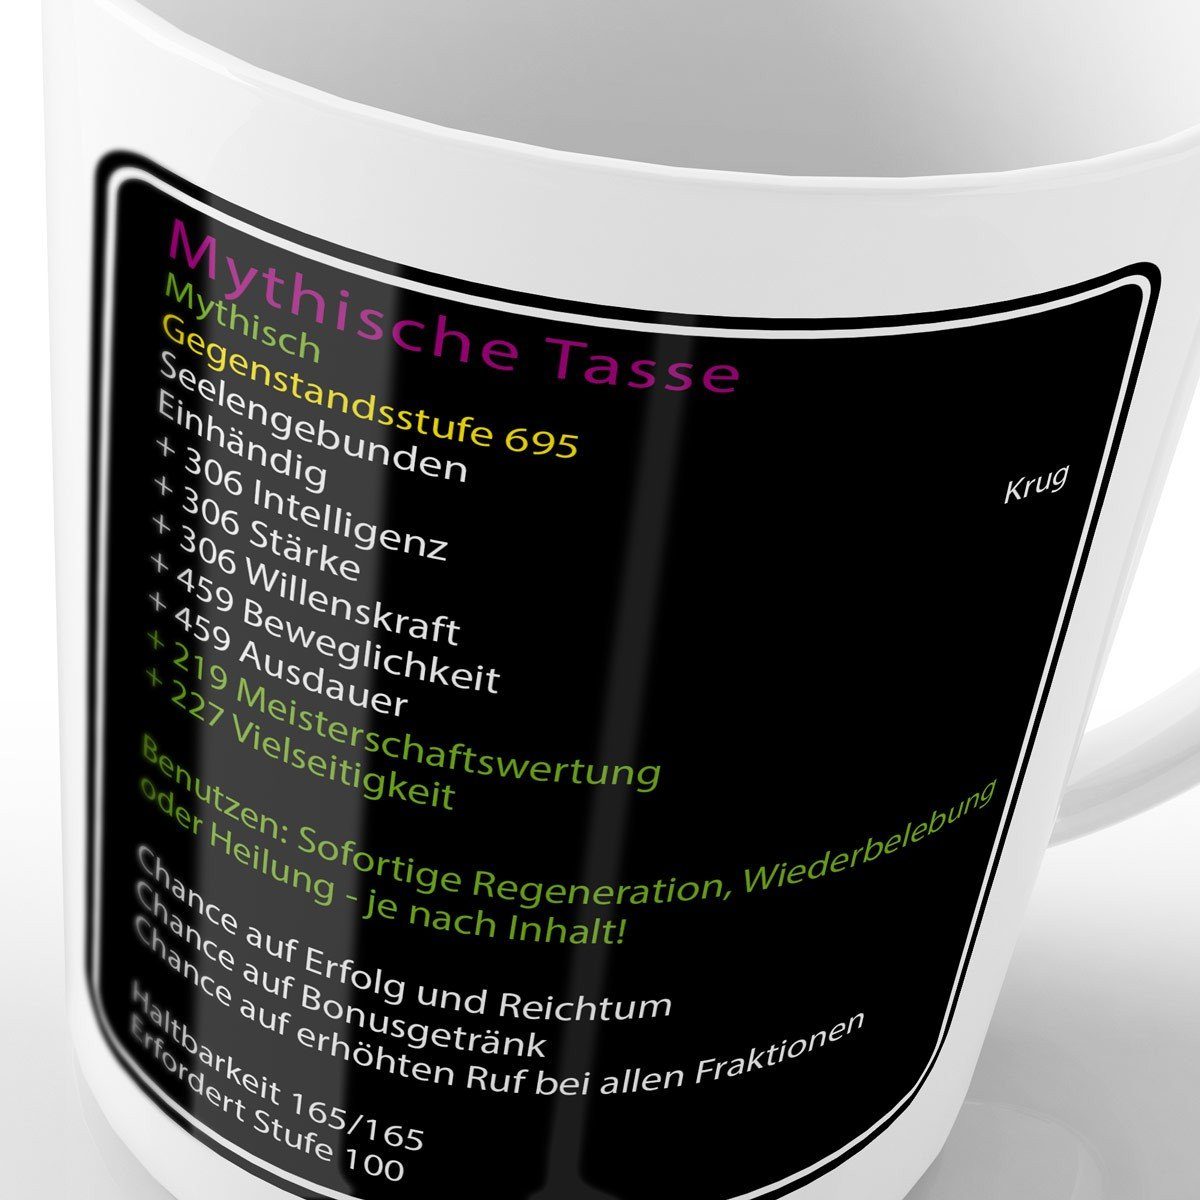 of warcraft style3 Keramik, horde Tasse Kaffeebecher world mmorpg Gegenstand Tee Tasse, wow Mythische gamer